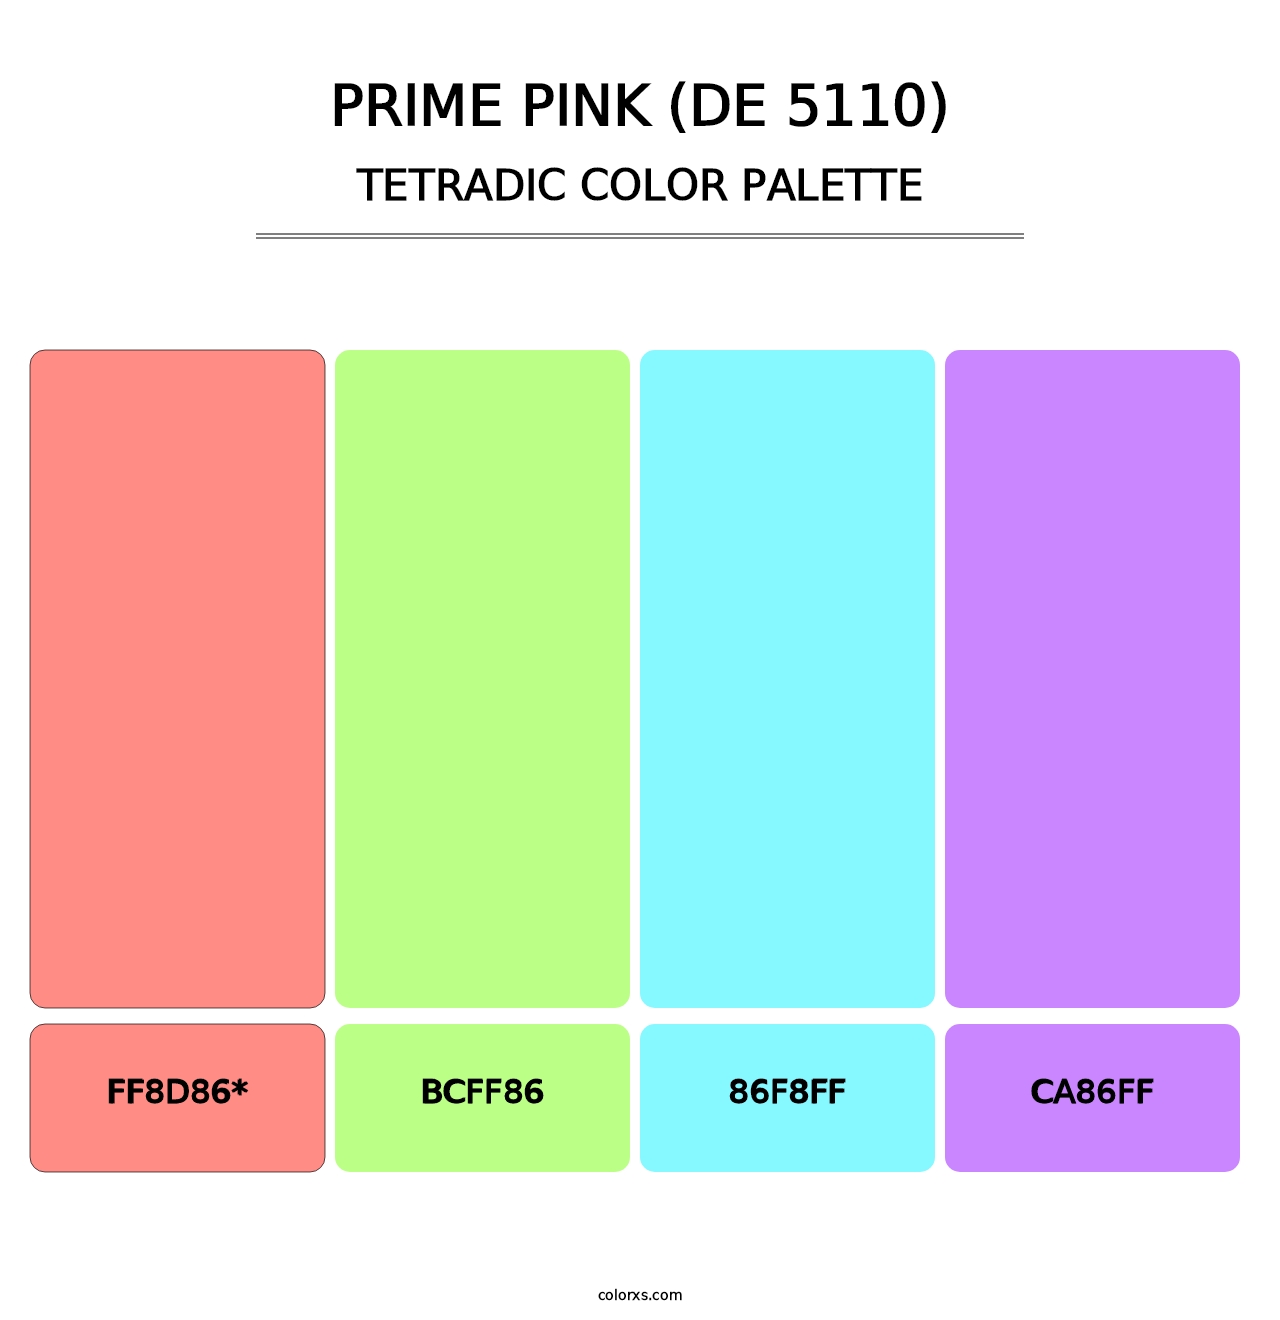 Prime Pink (DE 5110) - Tetradic Color Palette